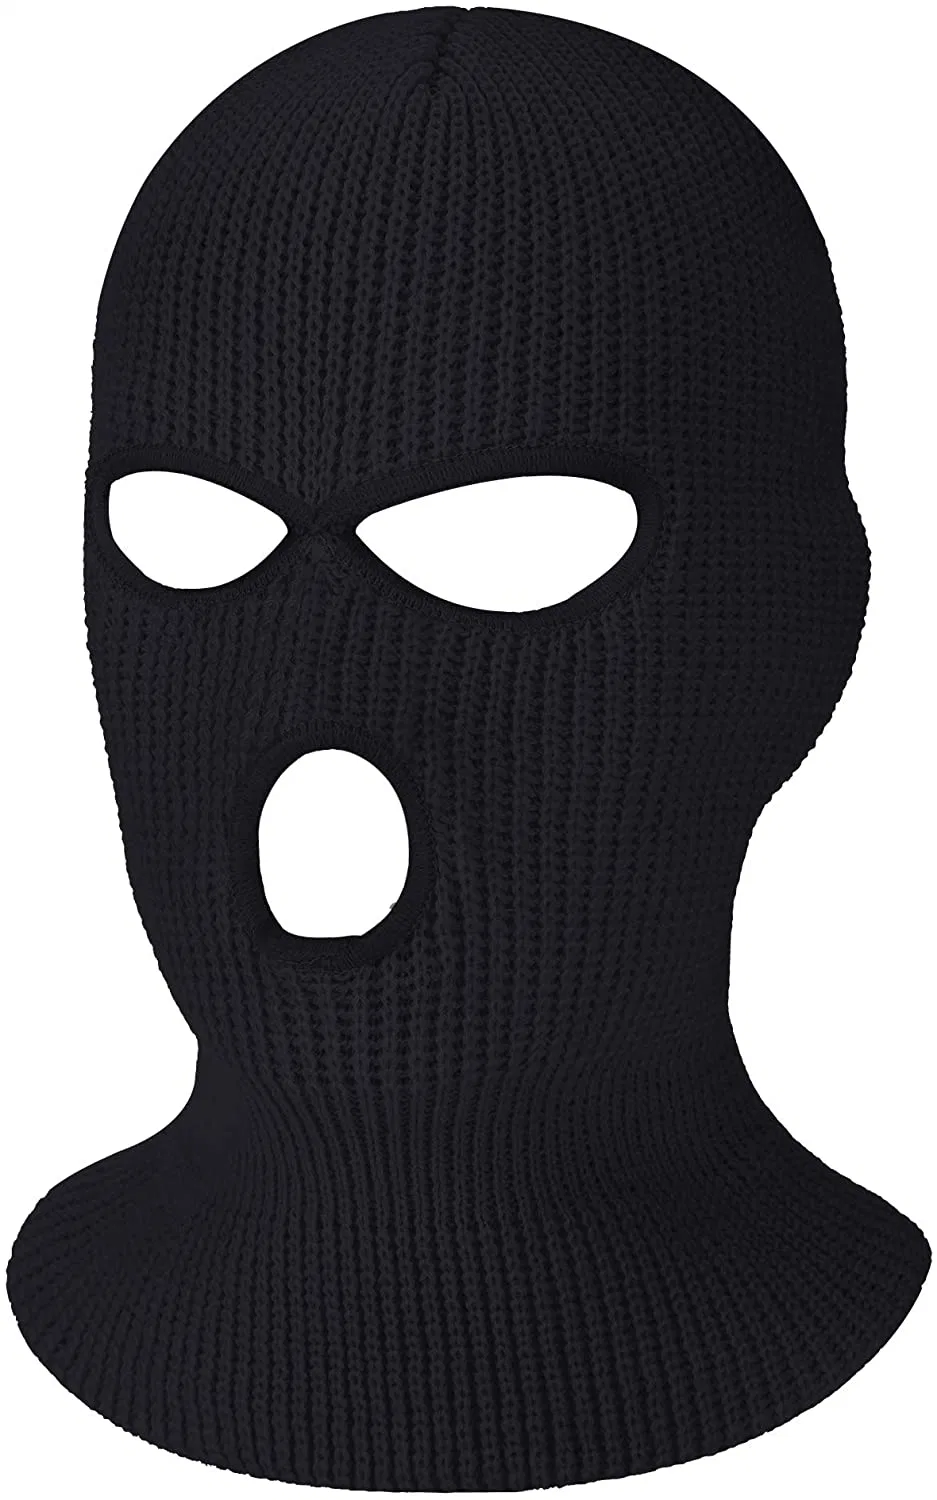 Étoffes de bonneterie à 3 trous noirs pleine couverture de visage masque de ski tricoté Hat, l'hiver Balaclava tricot chaud Masque facial intégral tricoté Hat pour les sports de plein air